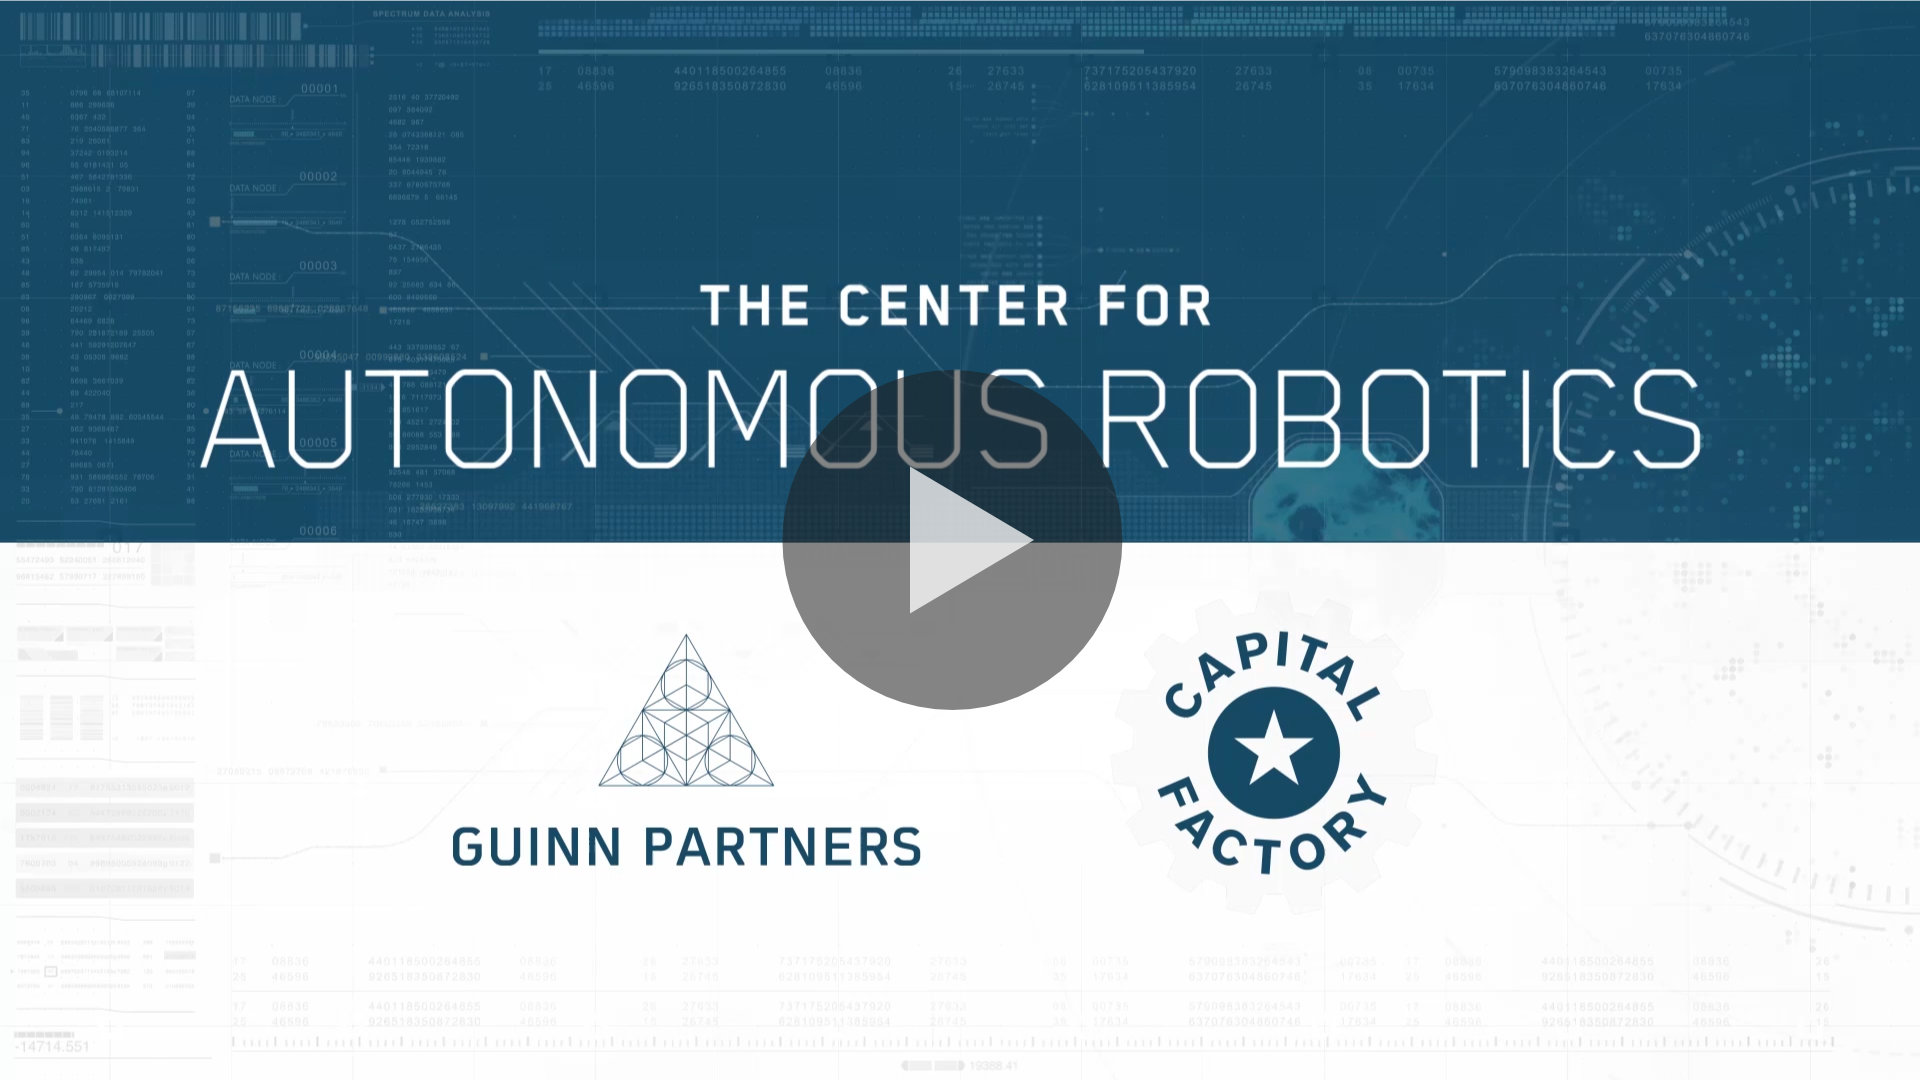 Guinn Partners & Capital Factory Launch the Center for Autonomous Robotics